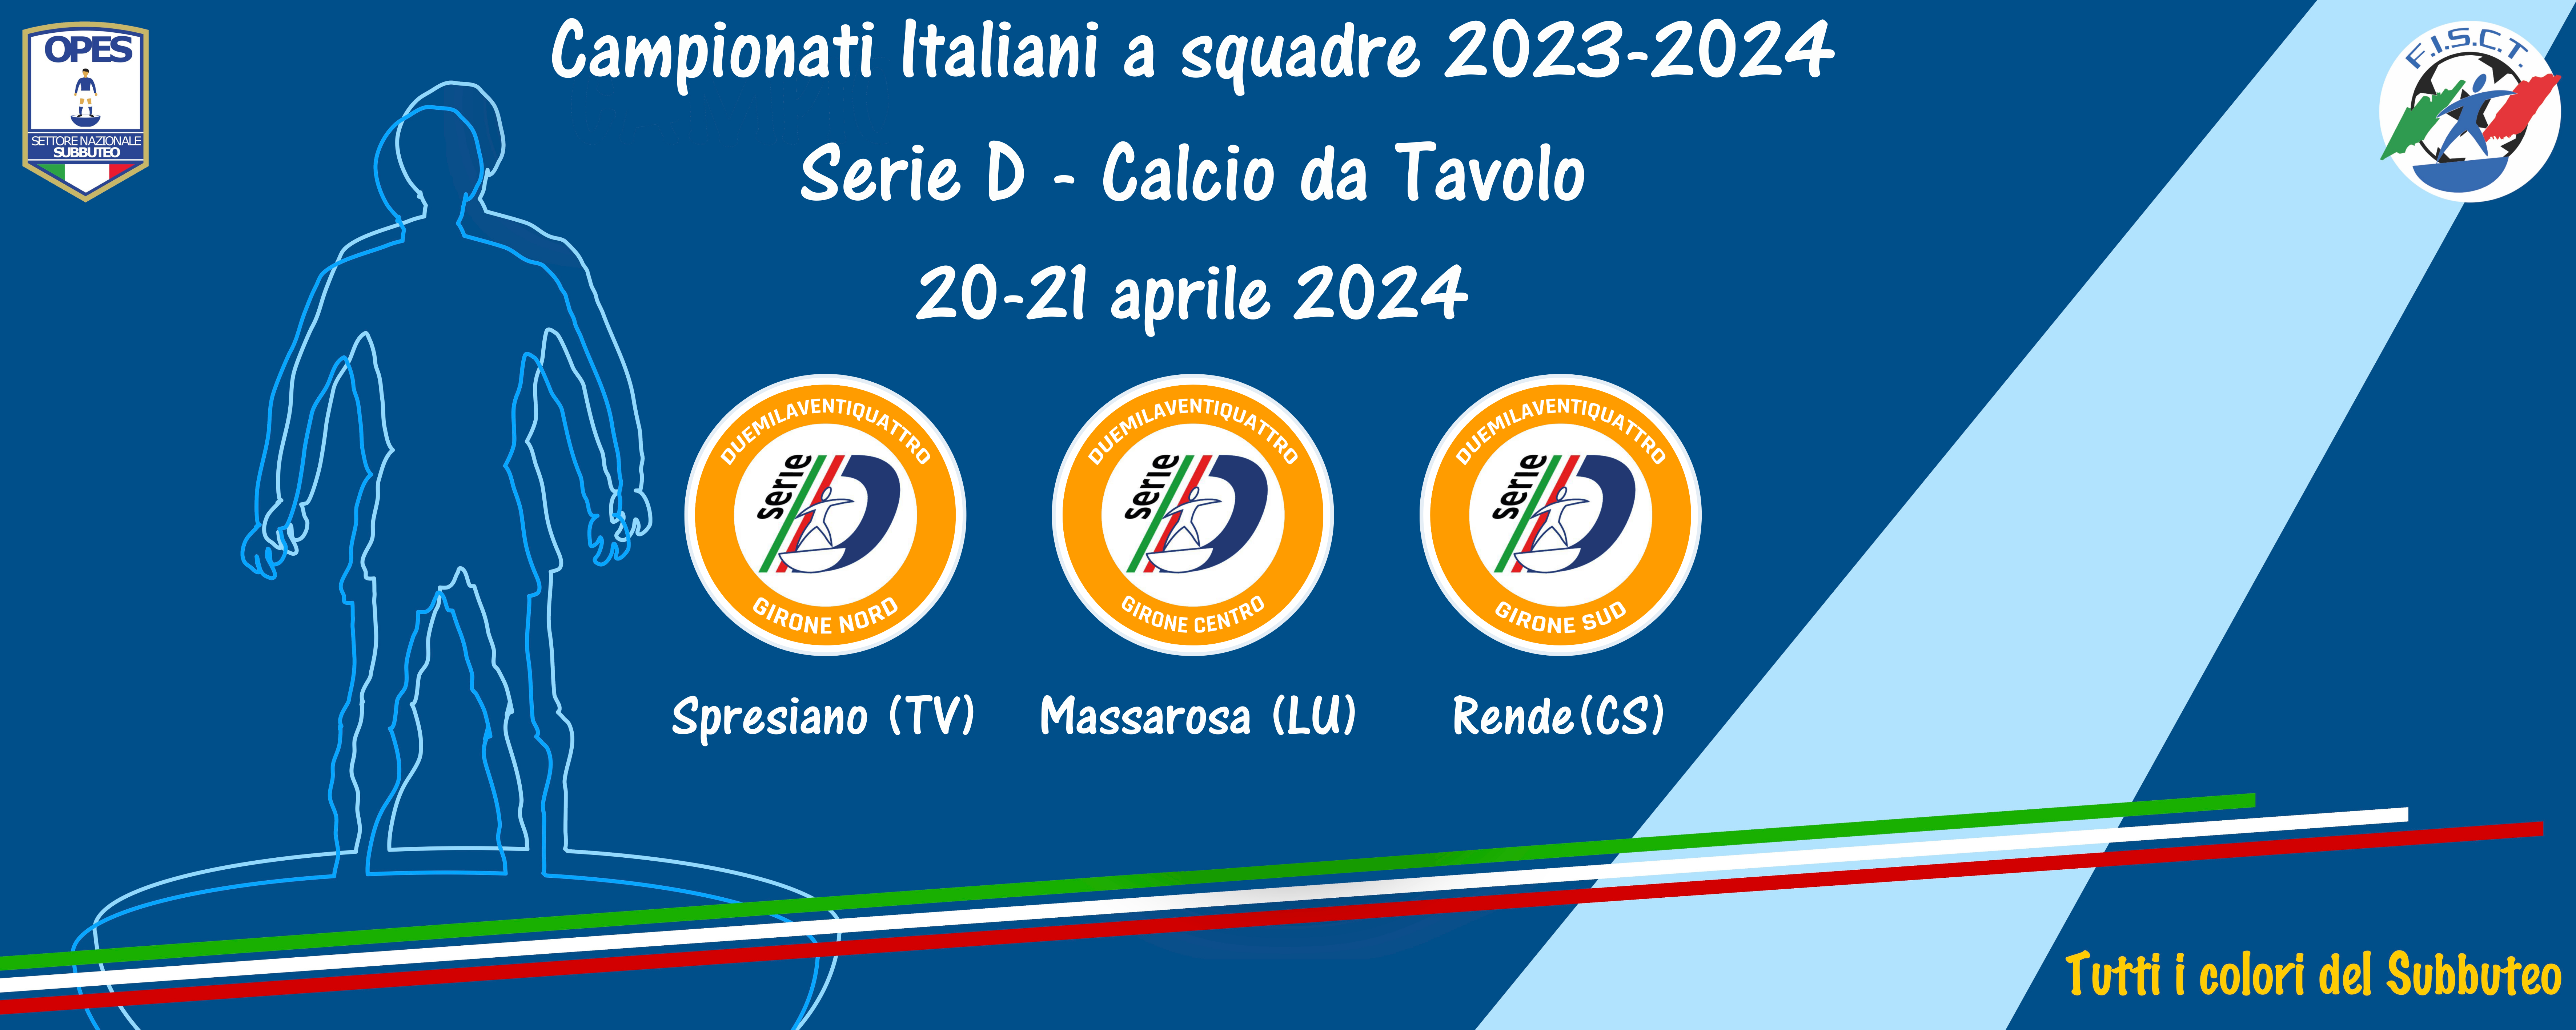 Calcio da Tavolo: nel weekend scendono in campo i tre gironi della Serie D